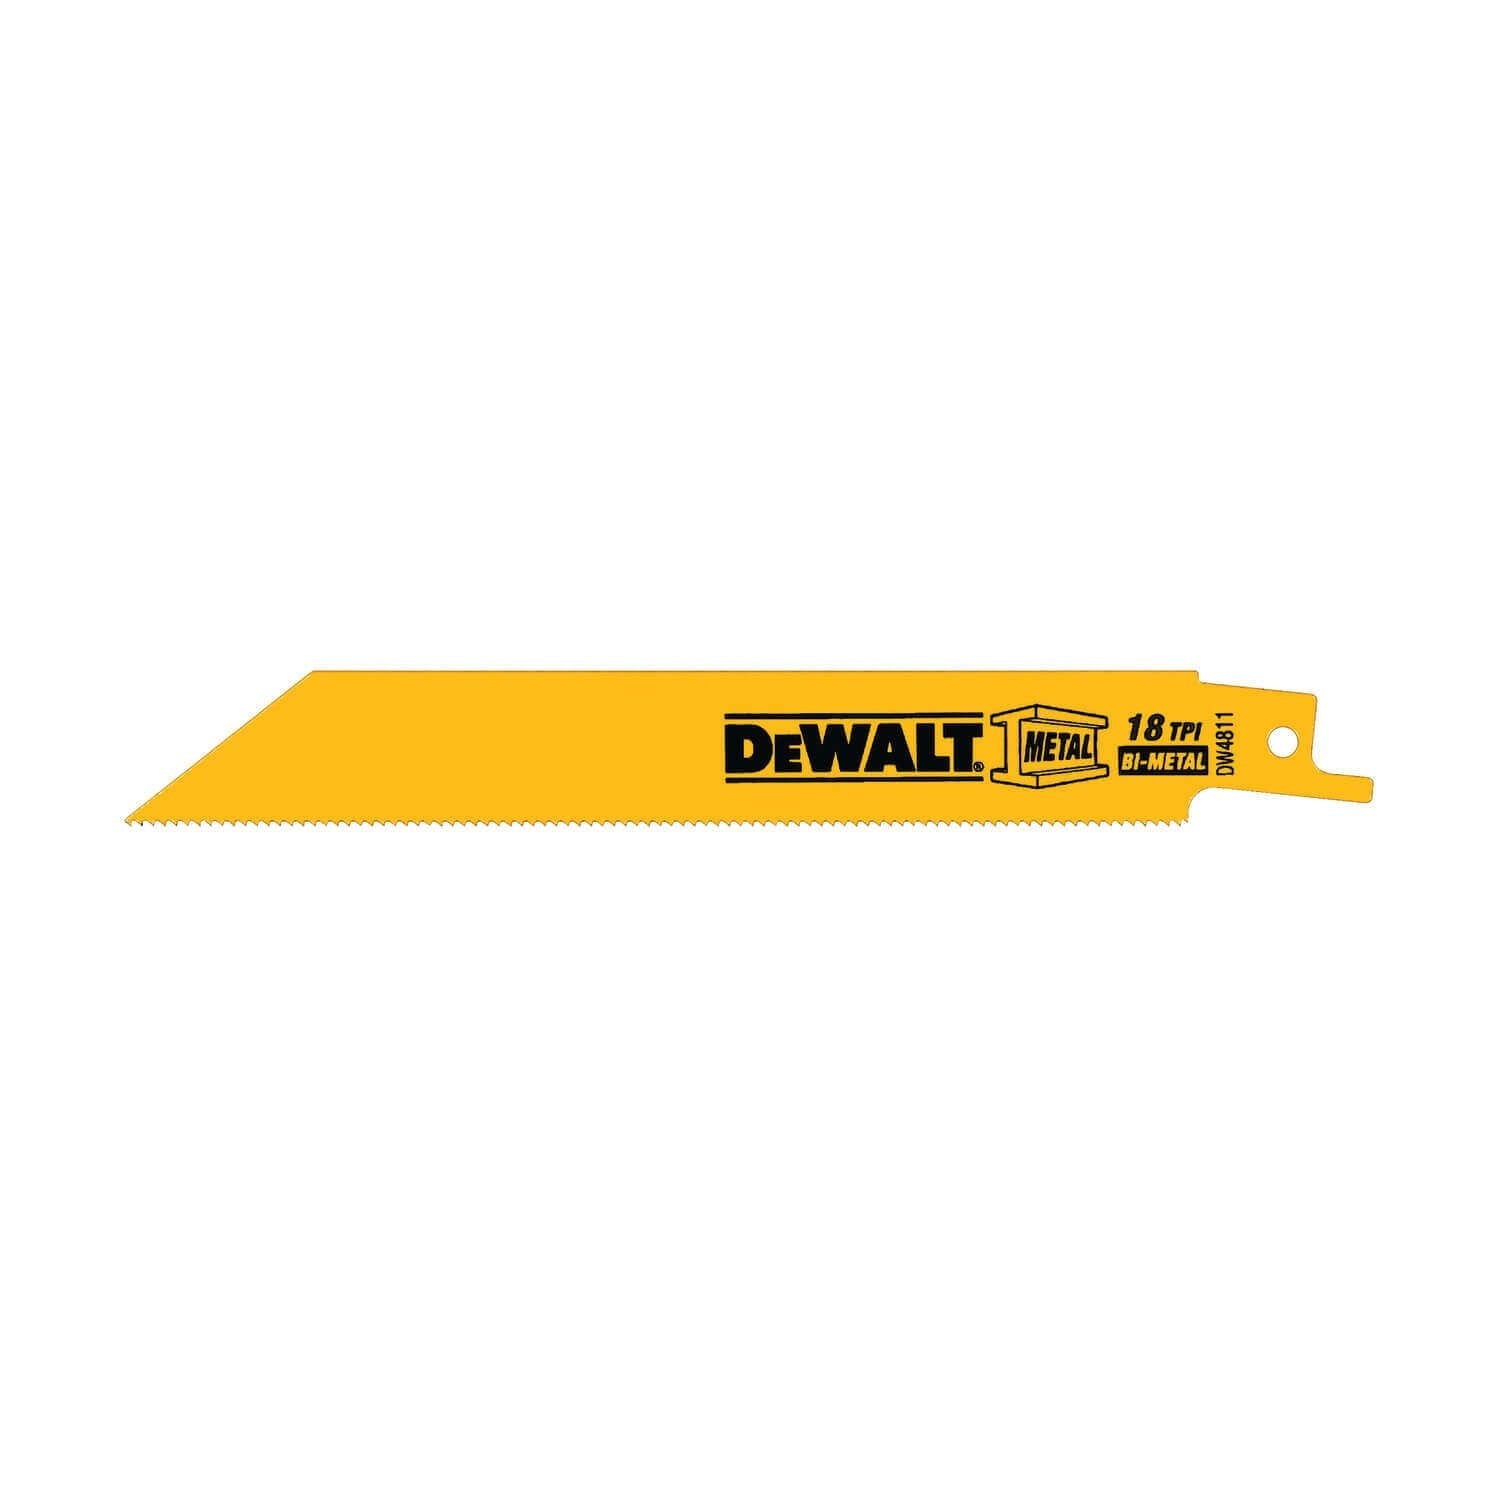 DEWALT DW4811 METAL CUTTING RECIPROCATING SAW BLADES